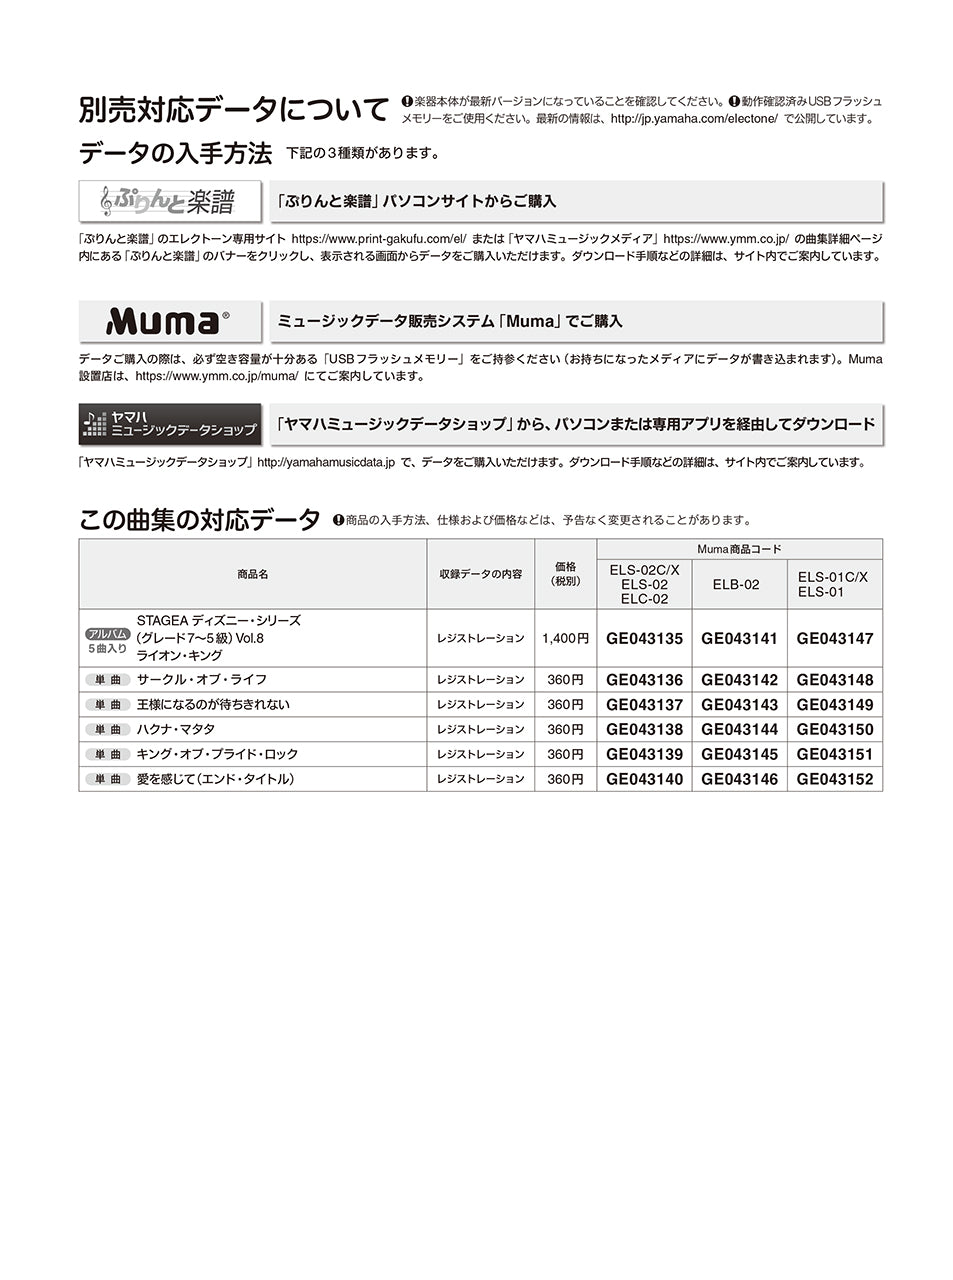 STAGEA ディズニー 7～5級 Vol.8 ライオン・キング_1